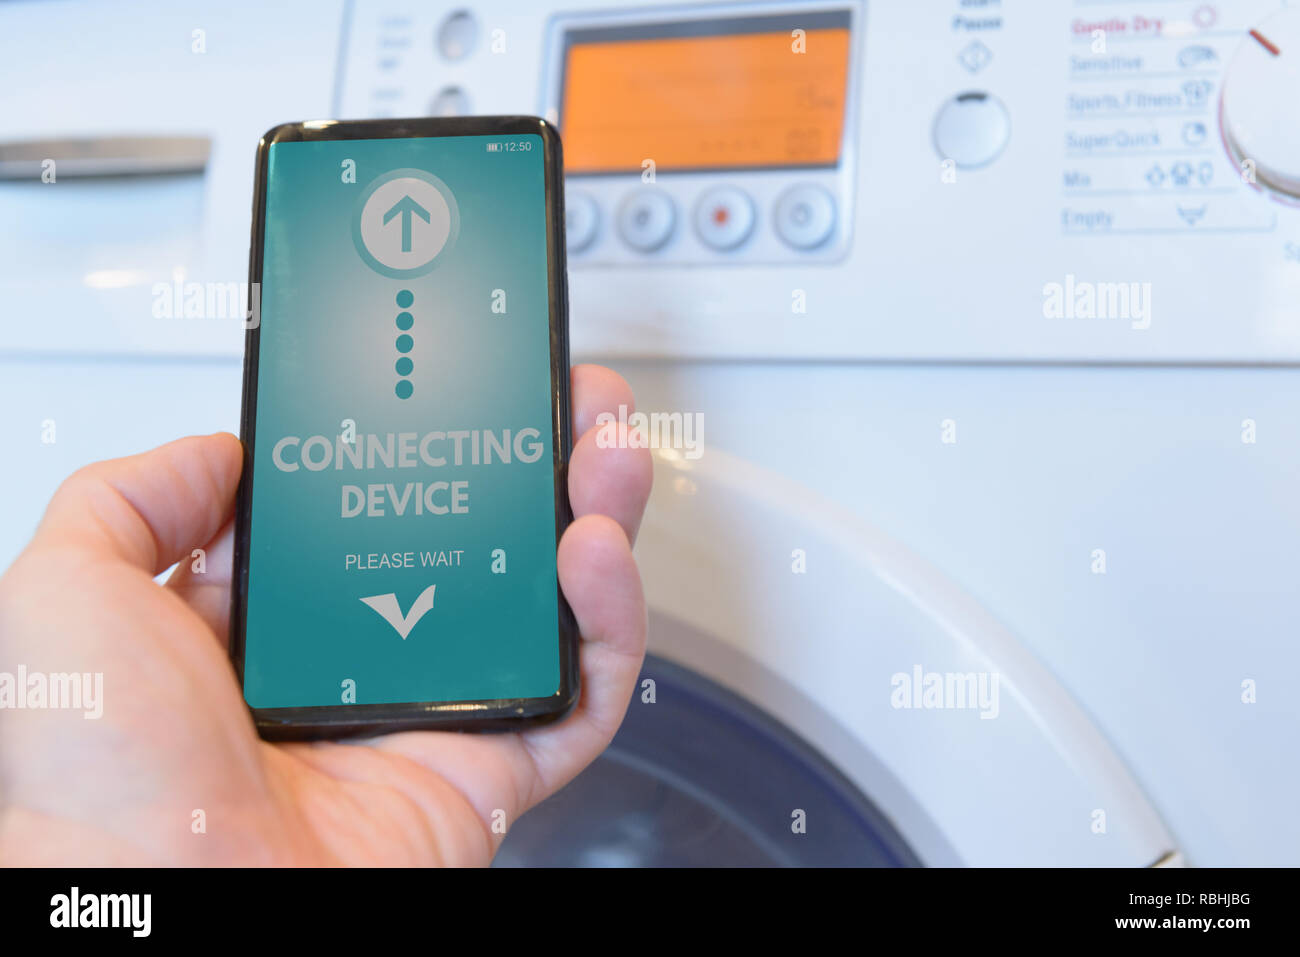 Connexion d'un lave-linge avec smart phone. Smart home et Internet des Objets concept ITO Banque D'Images